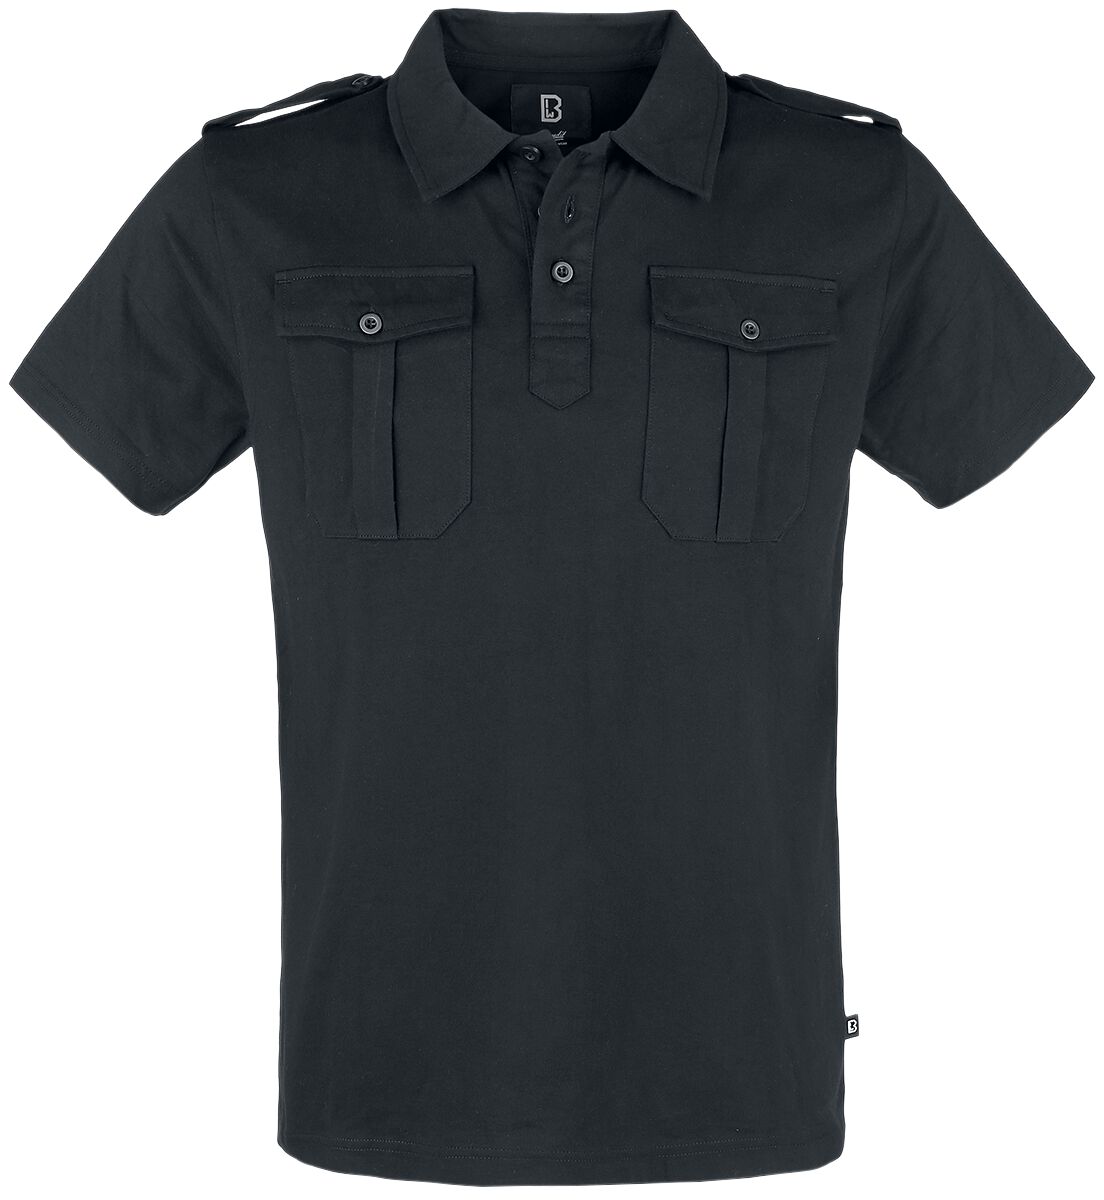 Brandit Poloshirt - Jersey Poloshirt Jon Shortsleeve - L bis 7XL - für Männer - Größe 3XL - schwarz